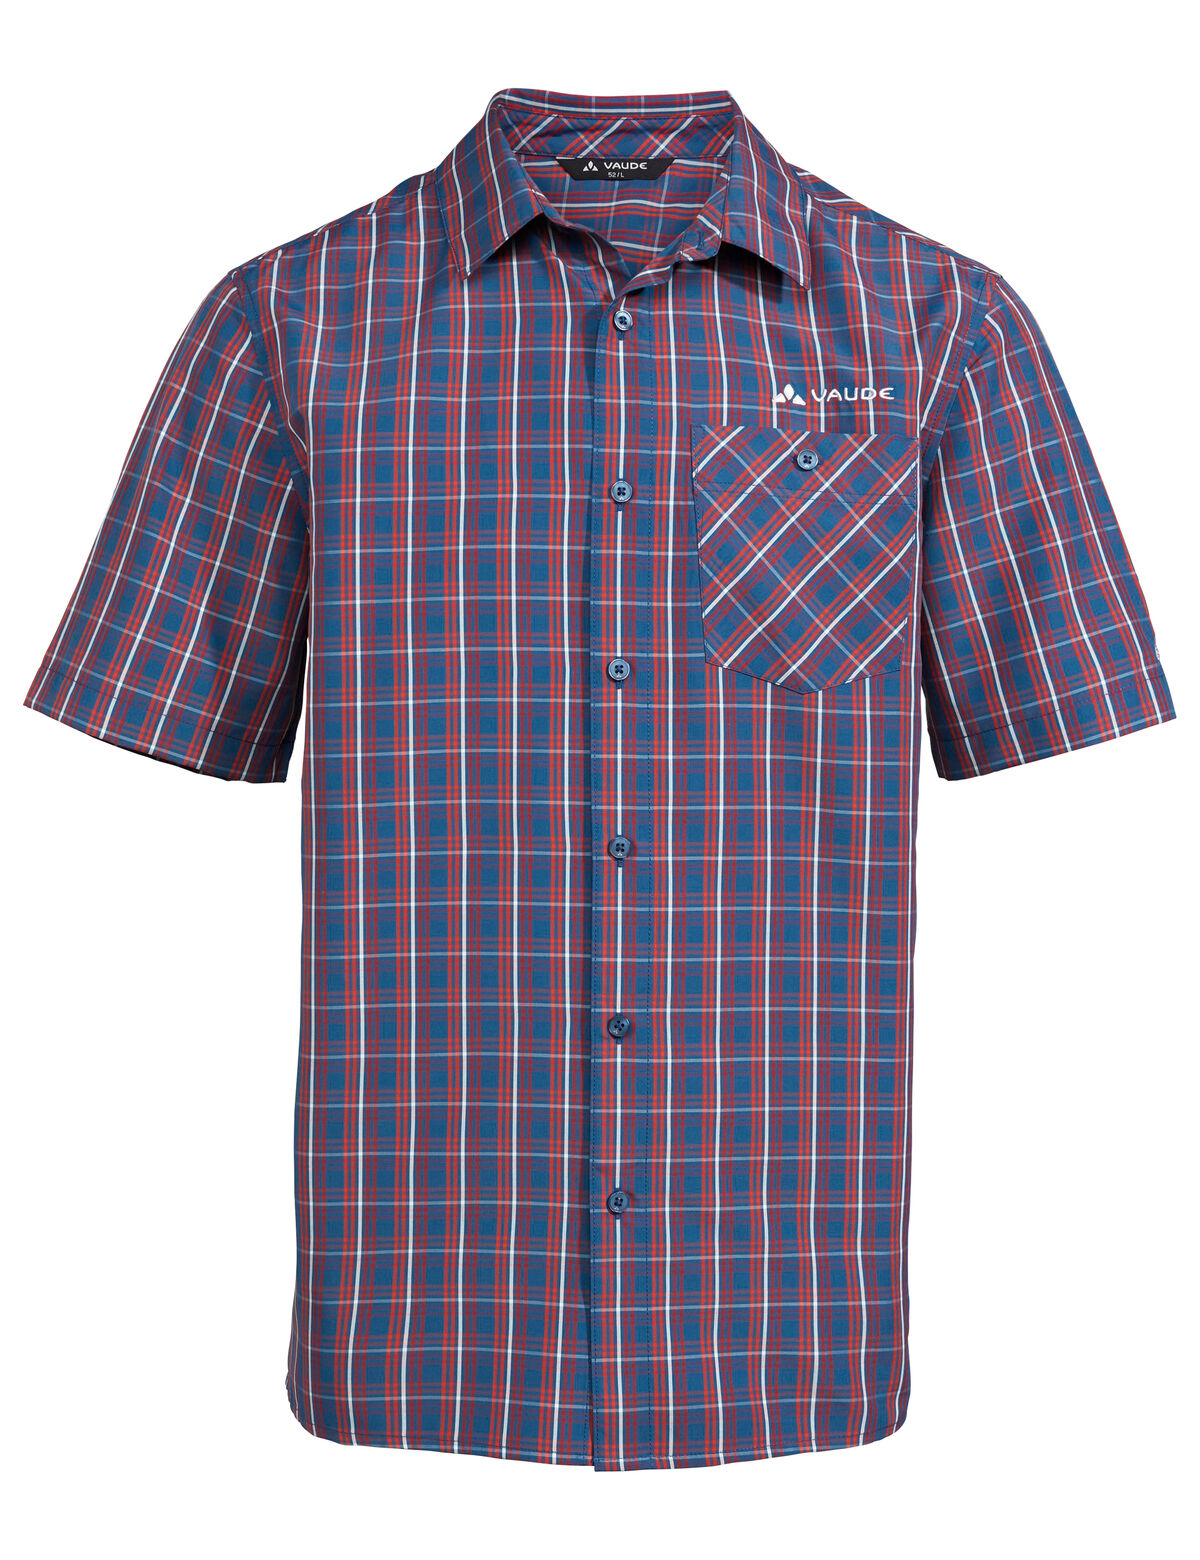 Vaude Albsteig Shirt II - Shirt - Men's